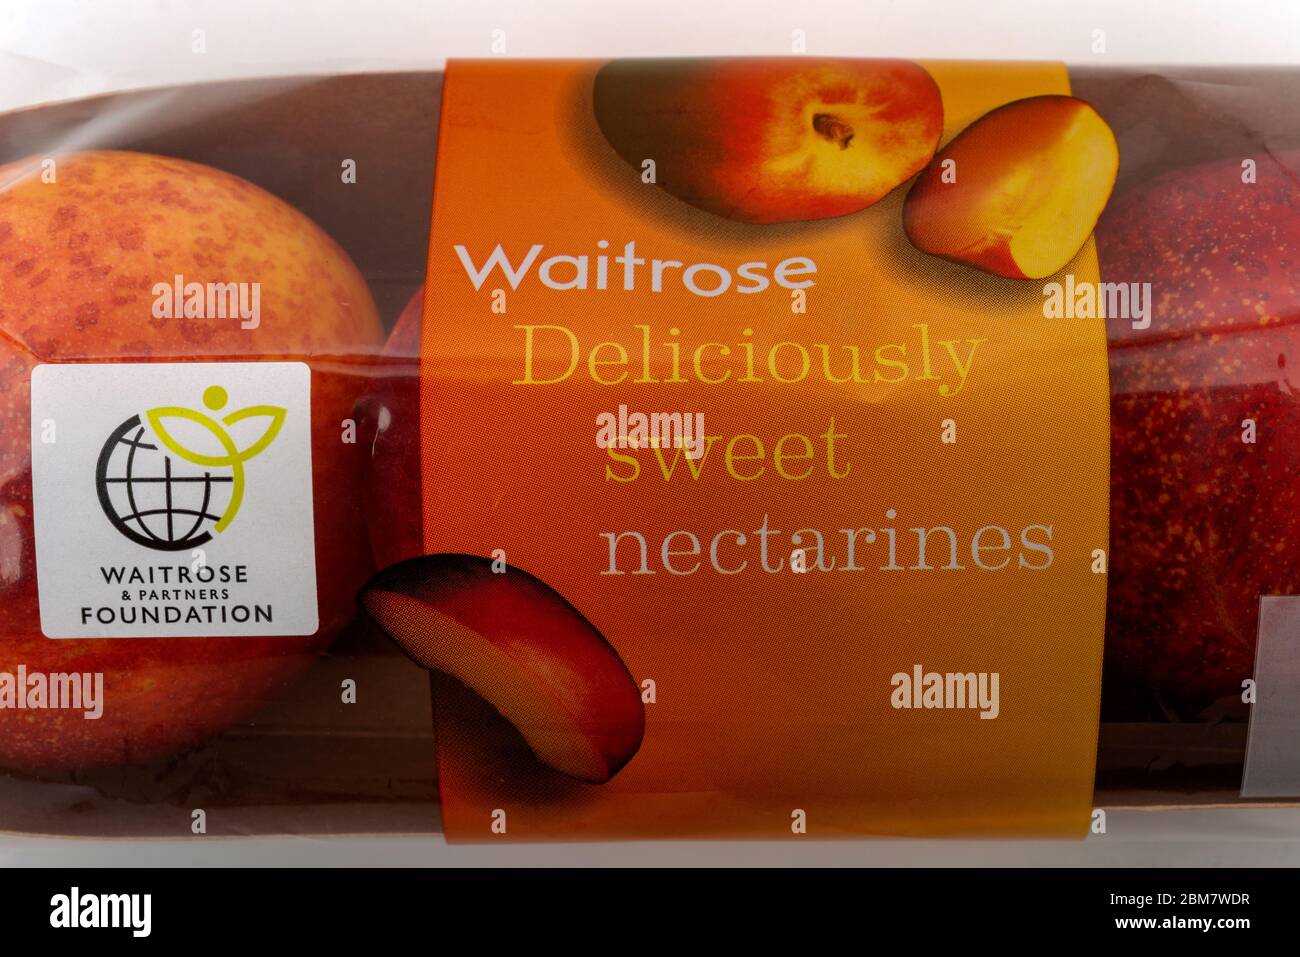 Waitrose and Partners foundation nectarines Stock Photo